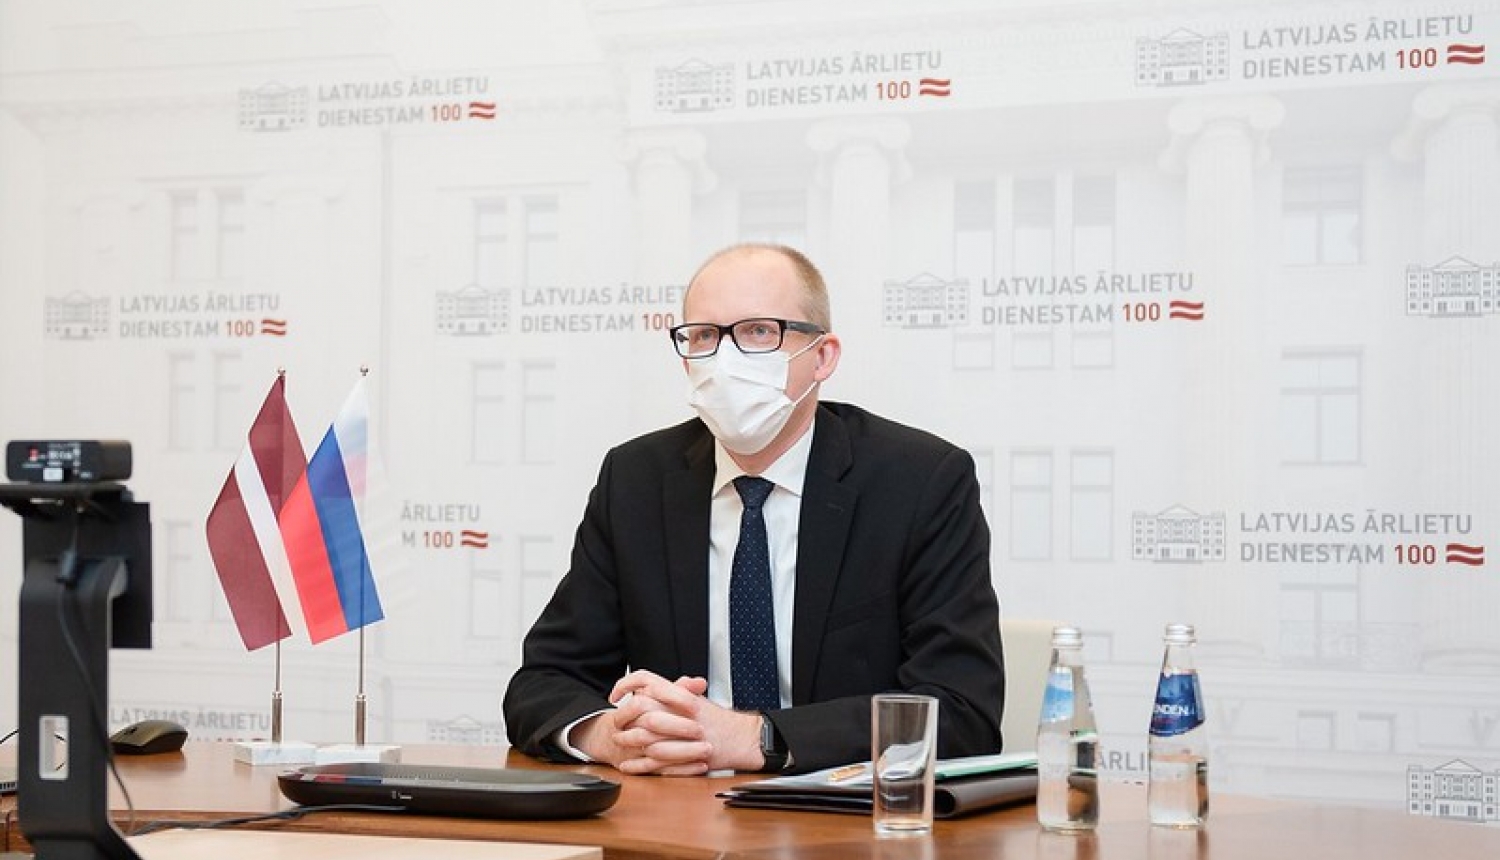 Ārlietu ministrijas valsts sekretārs tiekas ar Krievijas vēstnieku Latvijā Jevgeņiju Lukjanovu viņa atvadu vizītē